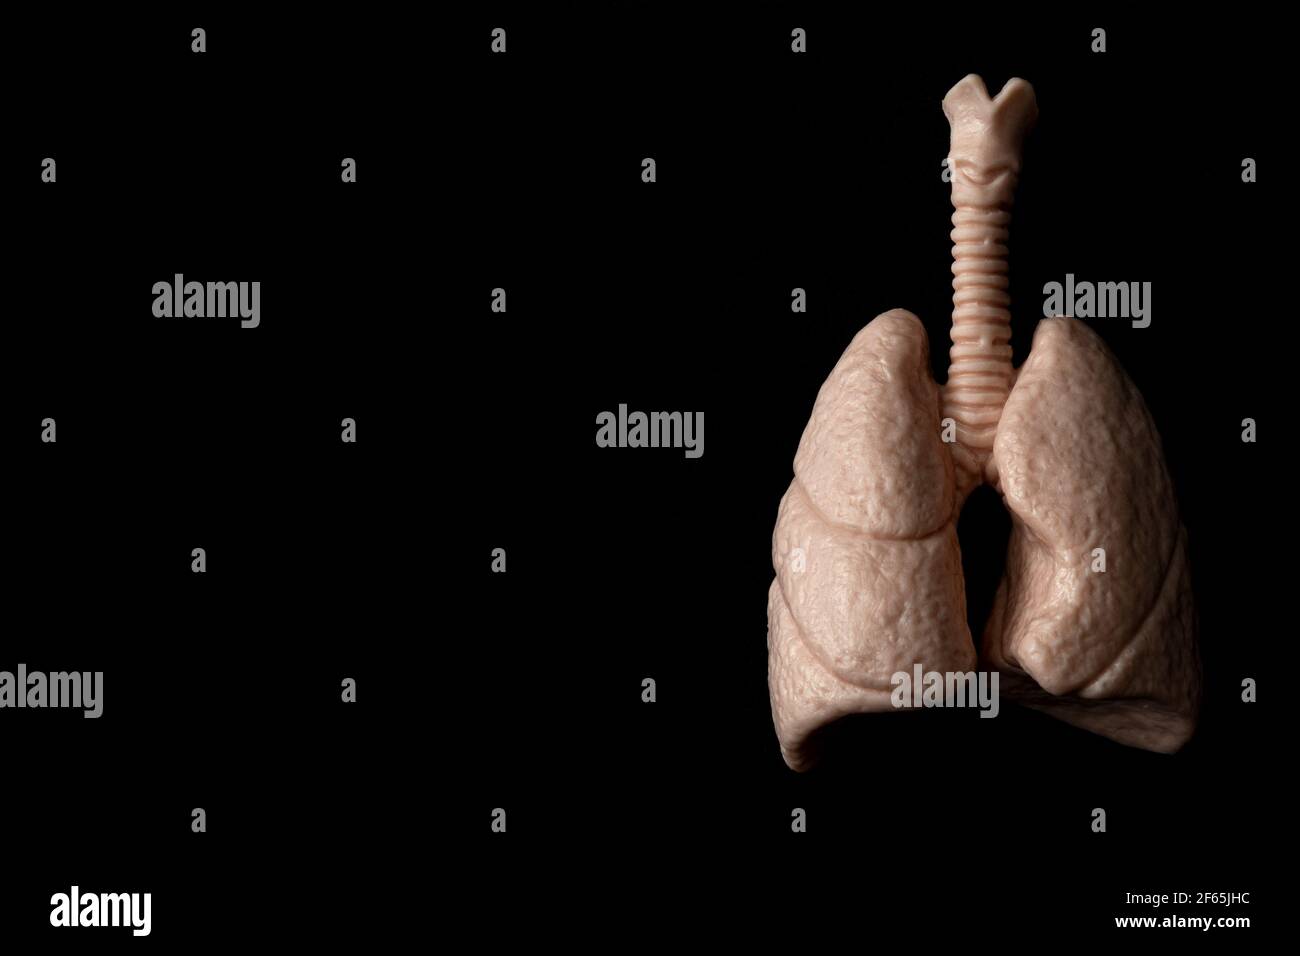 Menschliche Organe, Atemwege und Atmung Konzept Thema mit anatomischen Lungen isoliert auf schwarzem Hintergrund mit hohem Kontrast Beleuchtung, launisch li Stockfoto